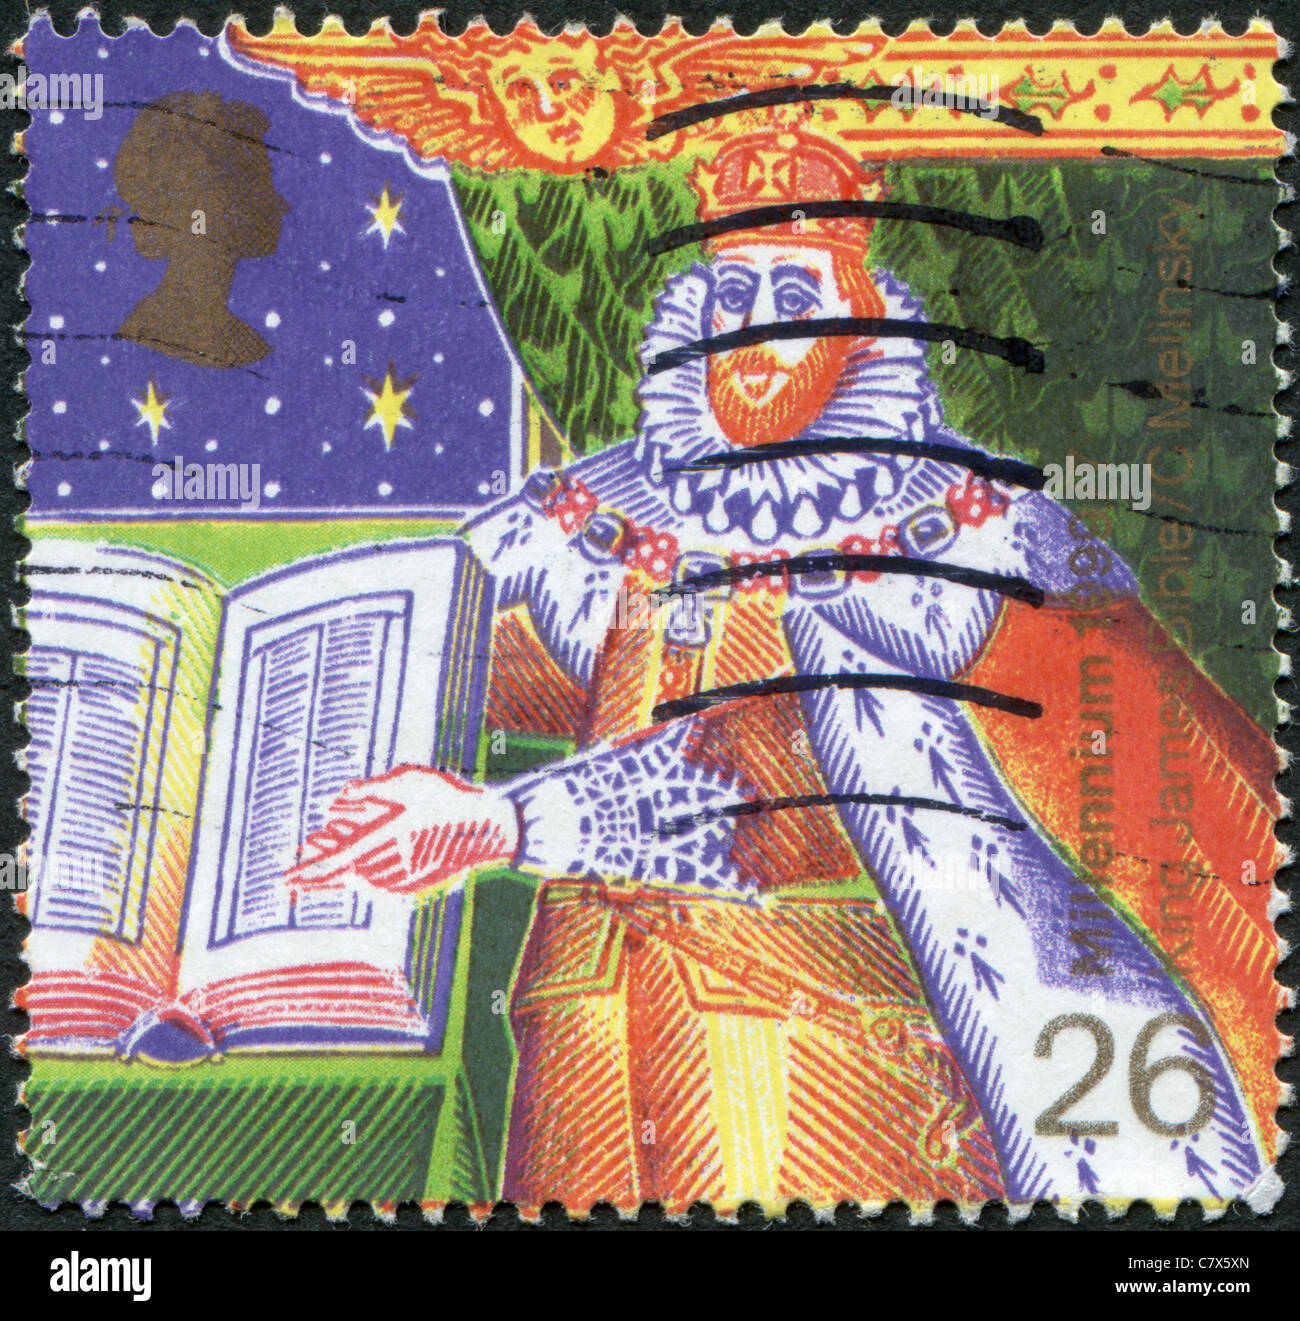 Reino Unido - 1999: un sello impreso en Inglaterra, muestra el rey James I de Inglaterra con la Biblia Foto de stock